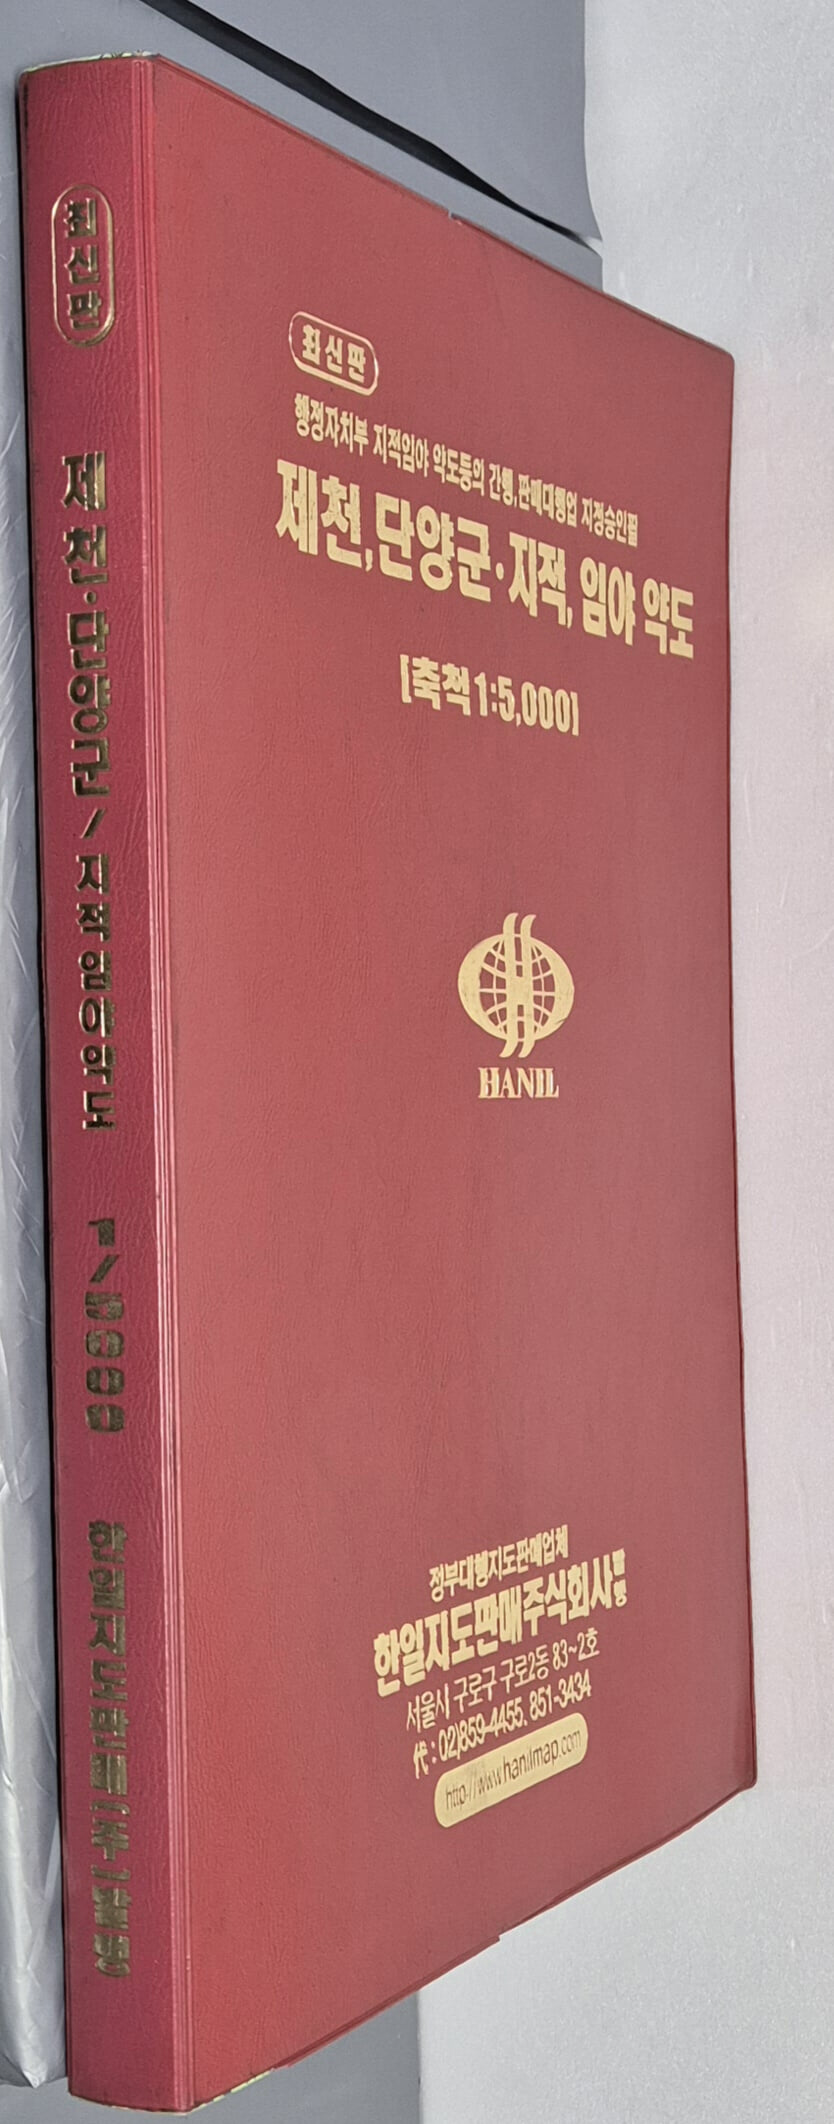 최신판 제천 단양군 지적, 임야 약도 (축척:1/5,000) - 2006년 한일지도판매